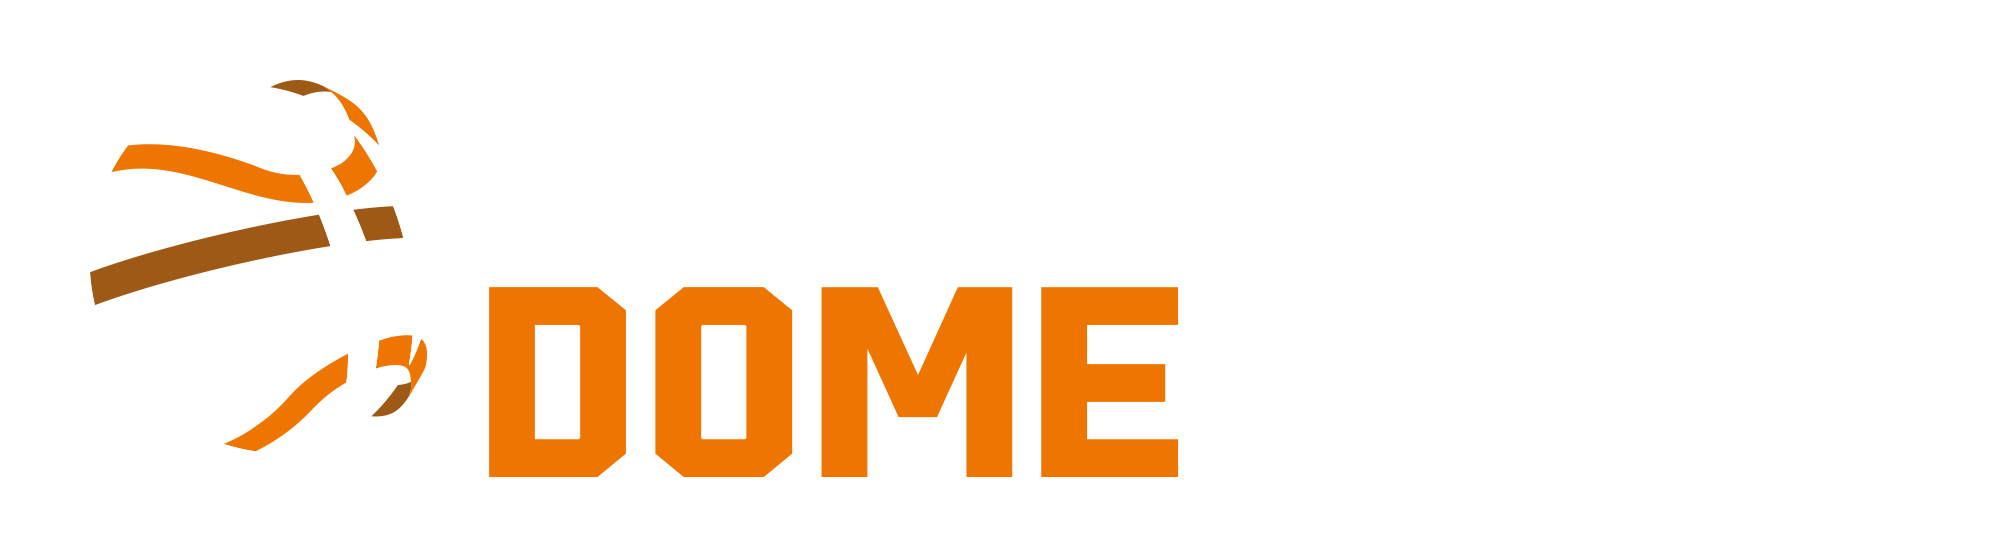 eurohoops